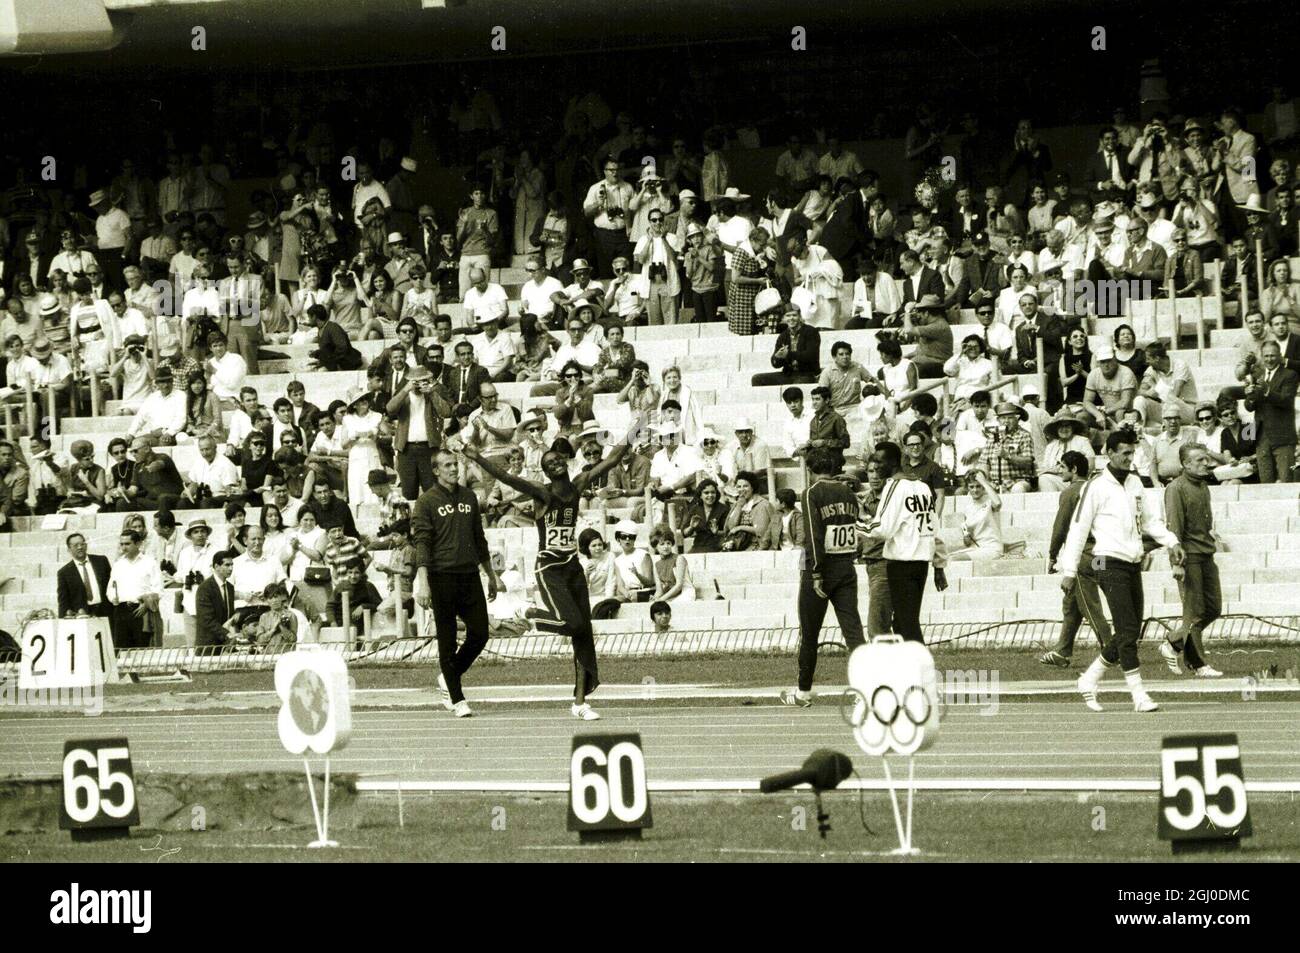 1968 Giochi Olimpici, Messico Bob Beamon degli Stati Uniti è il centro di attrazione per i fan che partecipano alla pista e gli eventi di campo al 19 ° Giochi Olimpici dopo aver rotto il record mondiale e olimpico nel lungo salto degli uomini. Ha saltato un record di 29 piedi 2 & 1-2 pollici. 18 ottobre 1968. Foto Stock